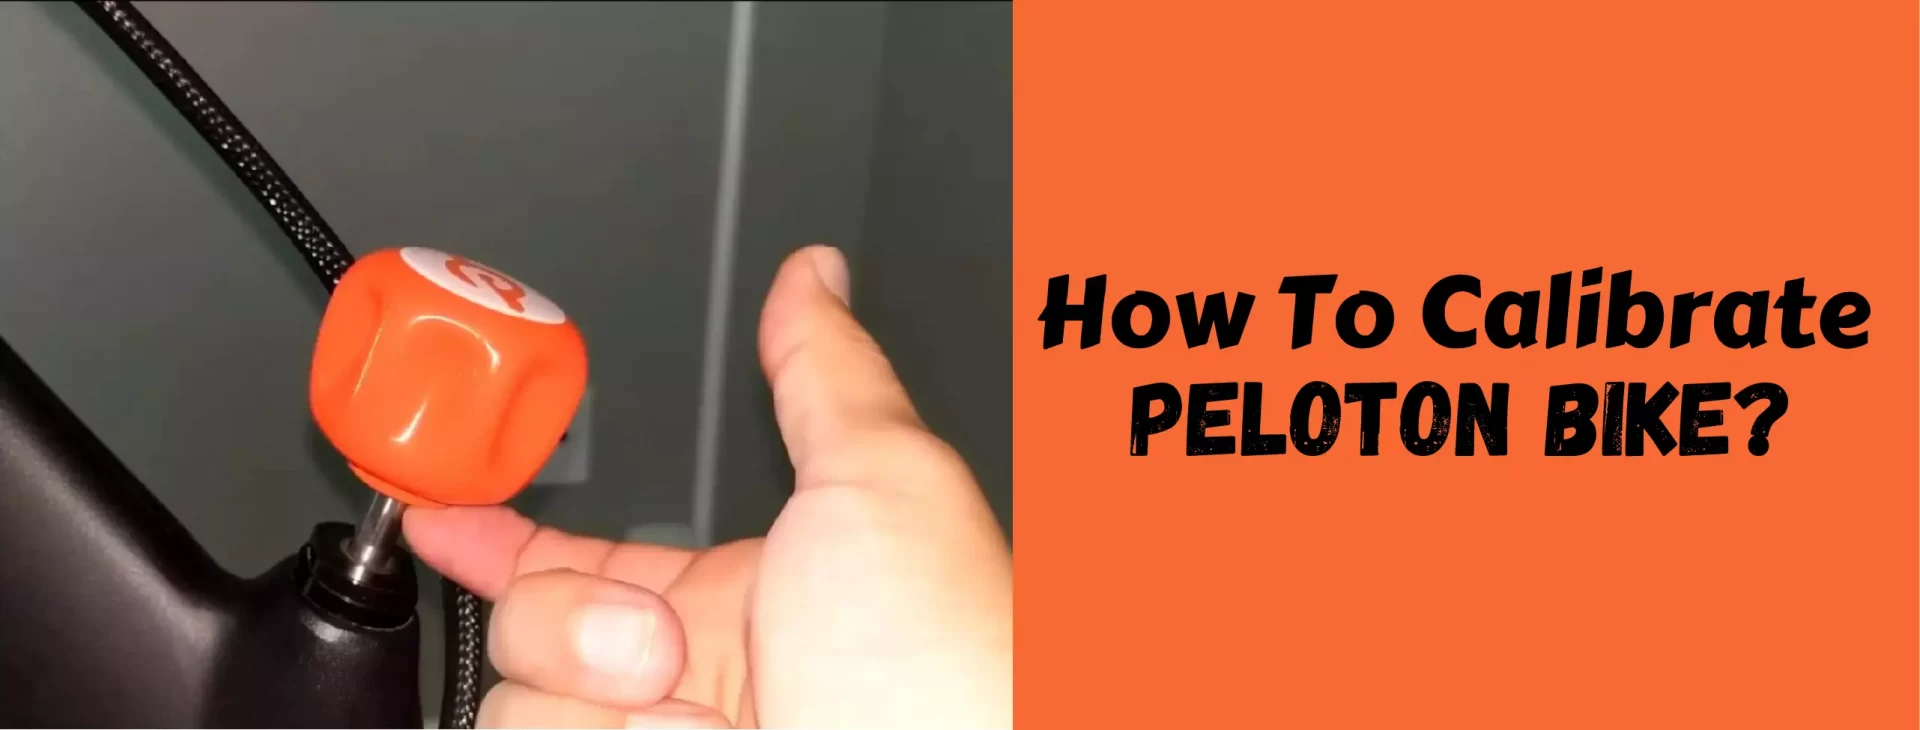 How To Calibrate Peloton Bike